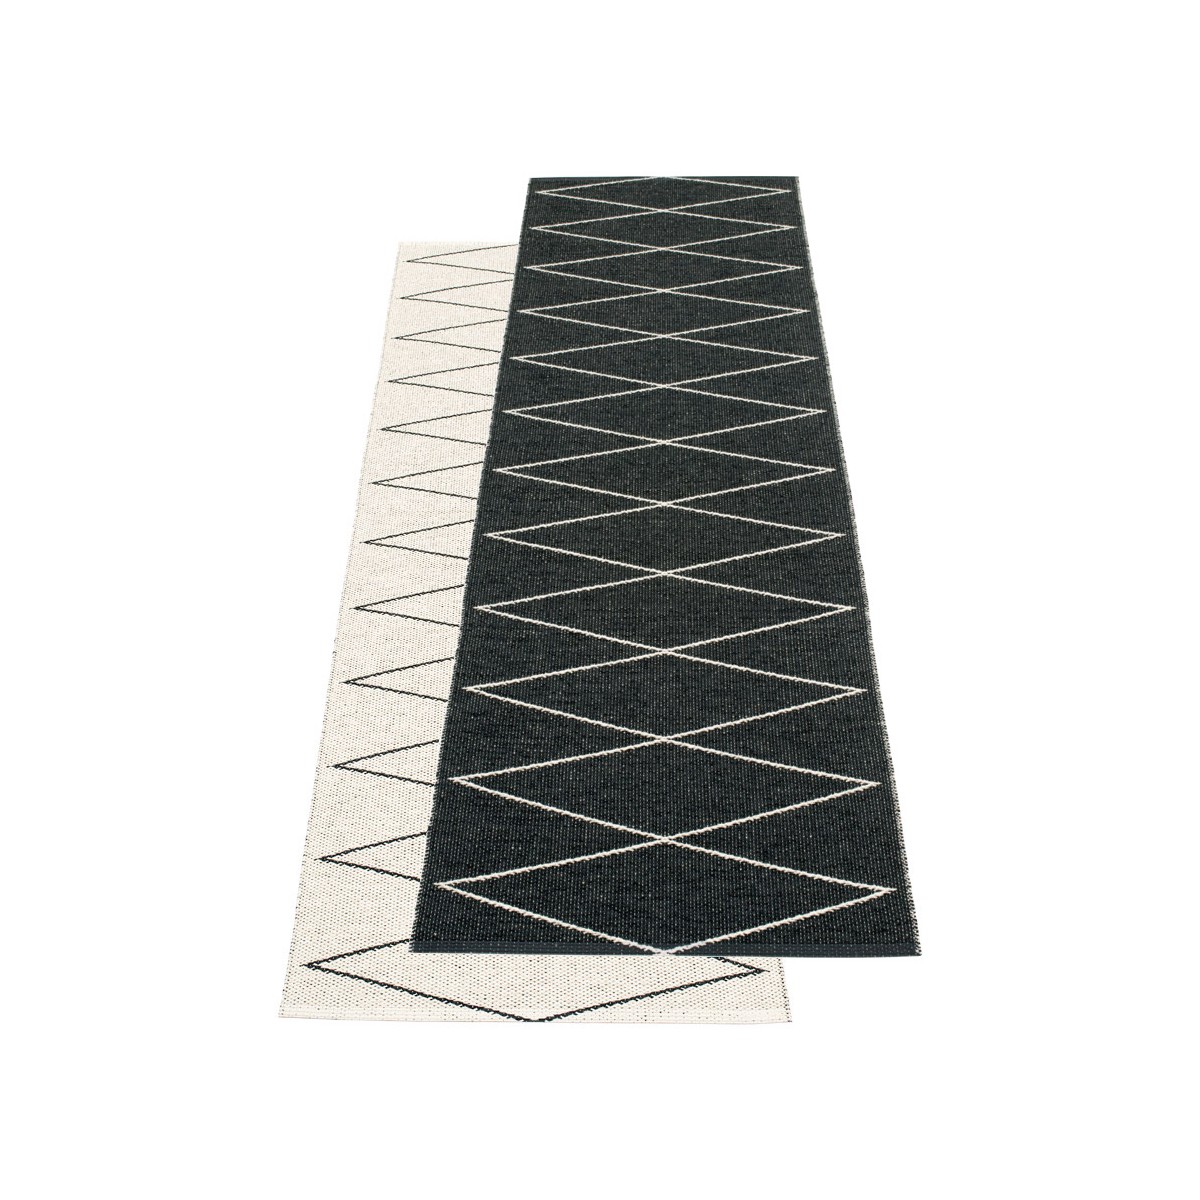 70x320 cm - Max rug